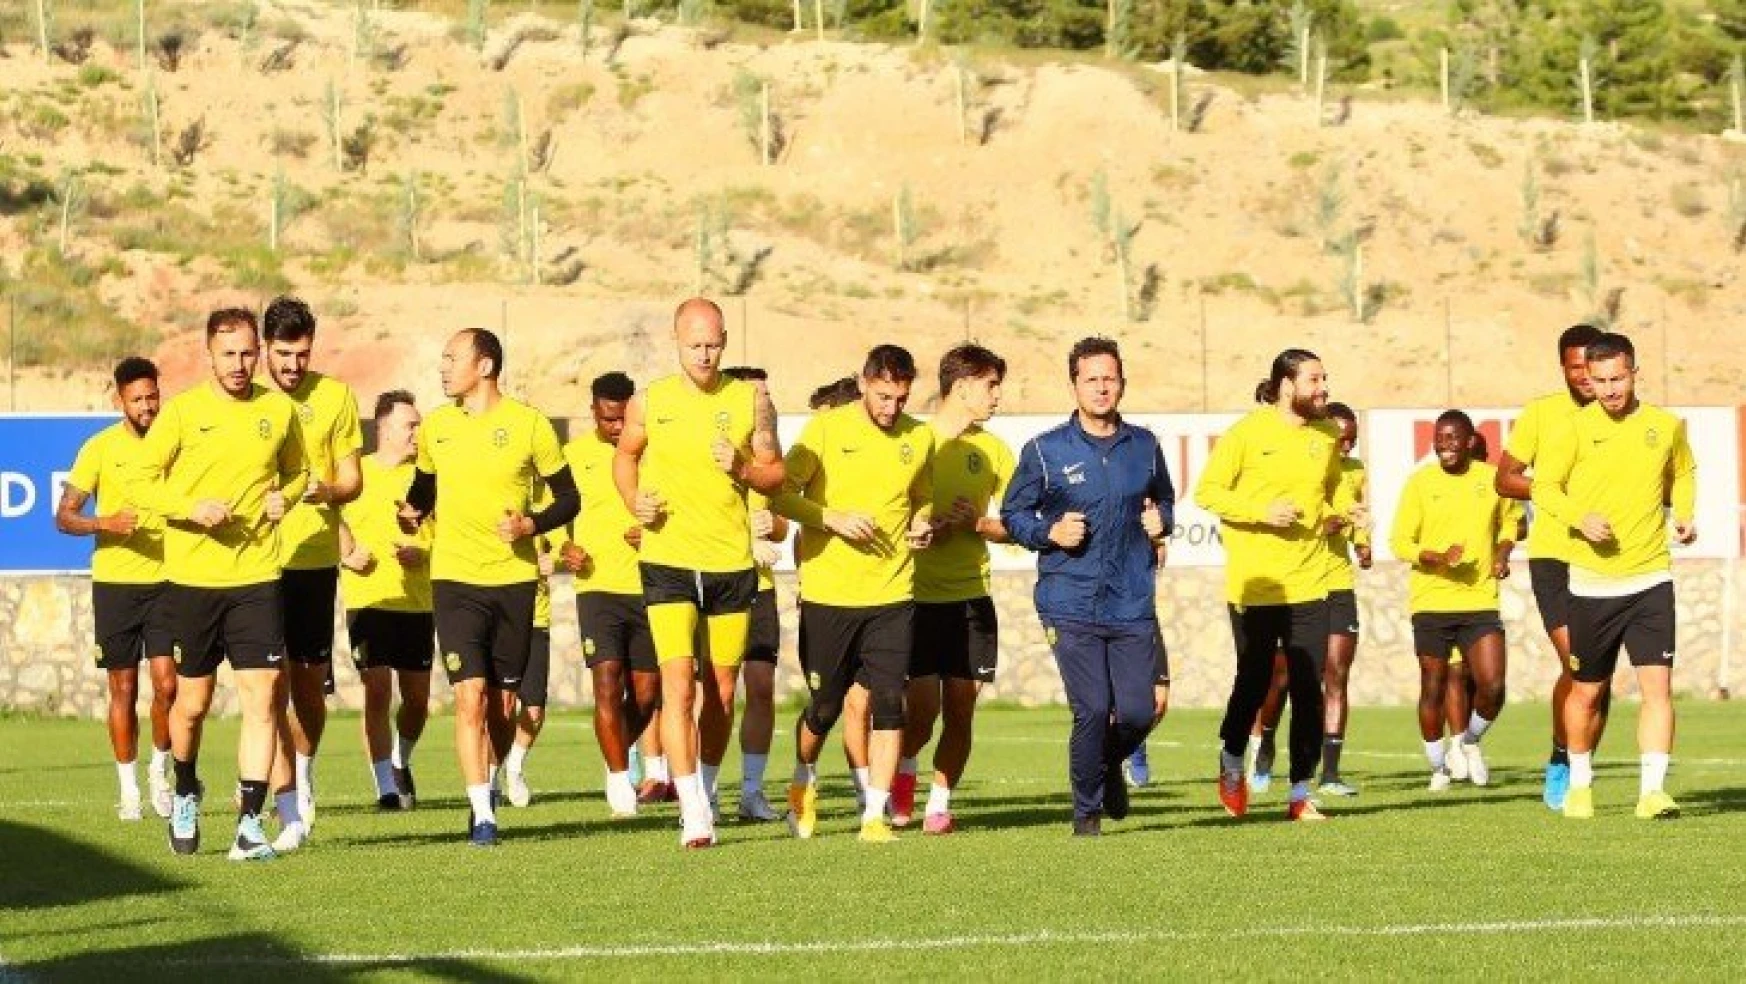 Yeni Malatyaspor, Galatasaray maçının hazırlıklarını tamamladı